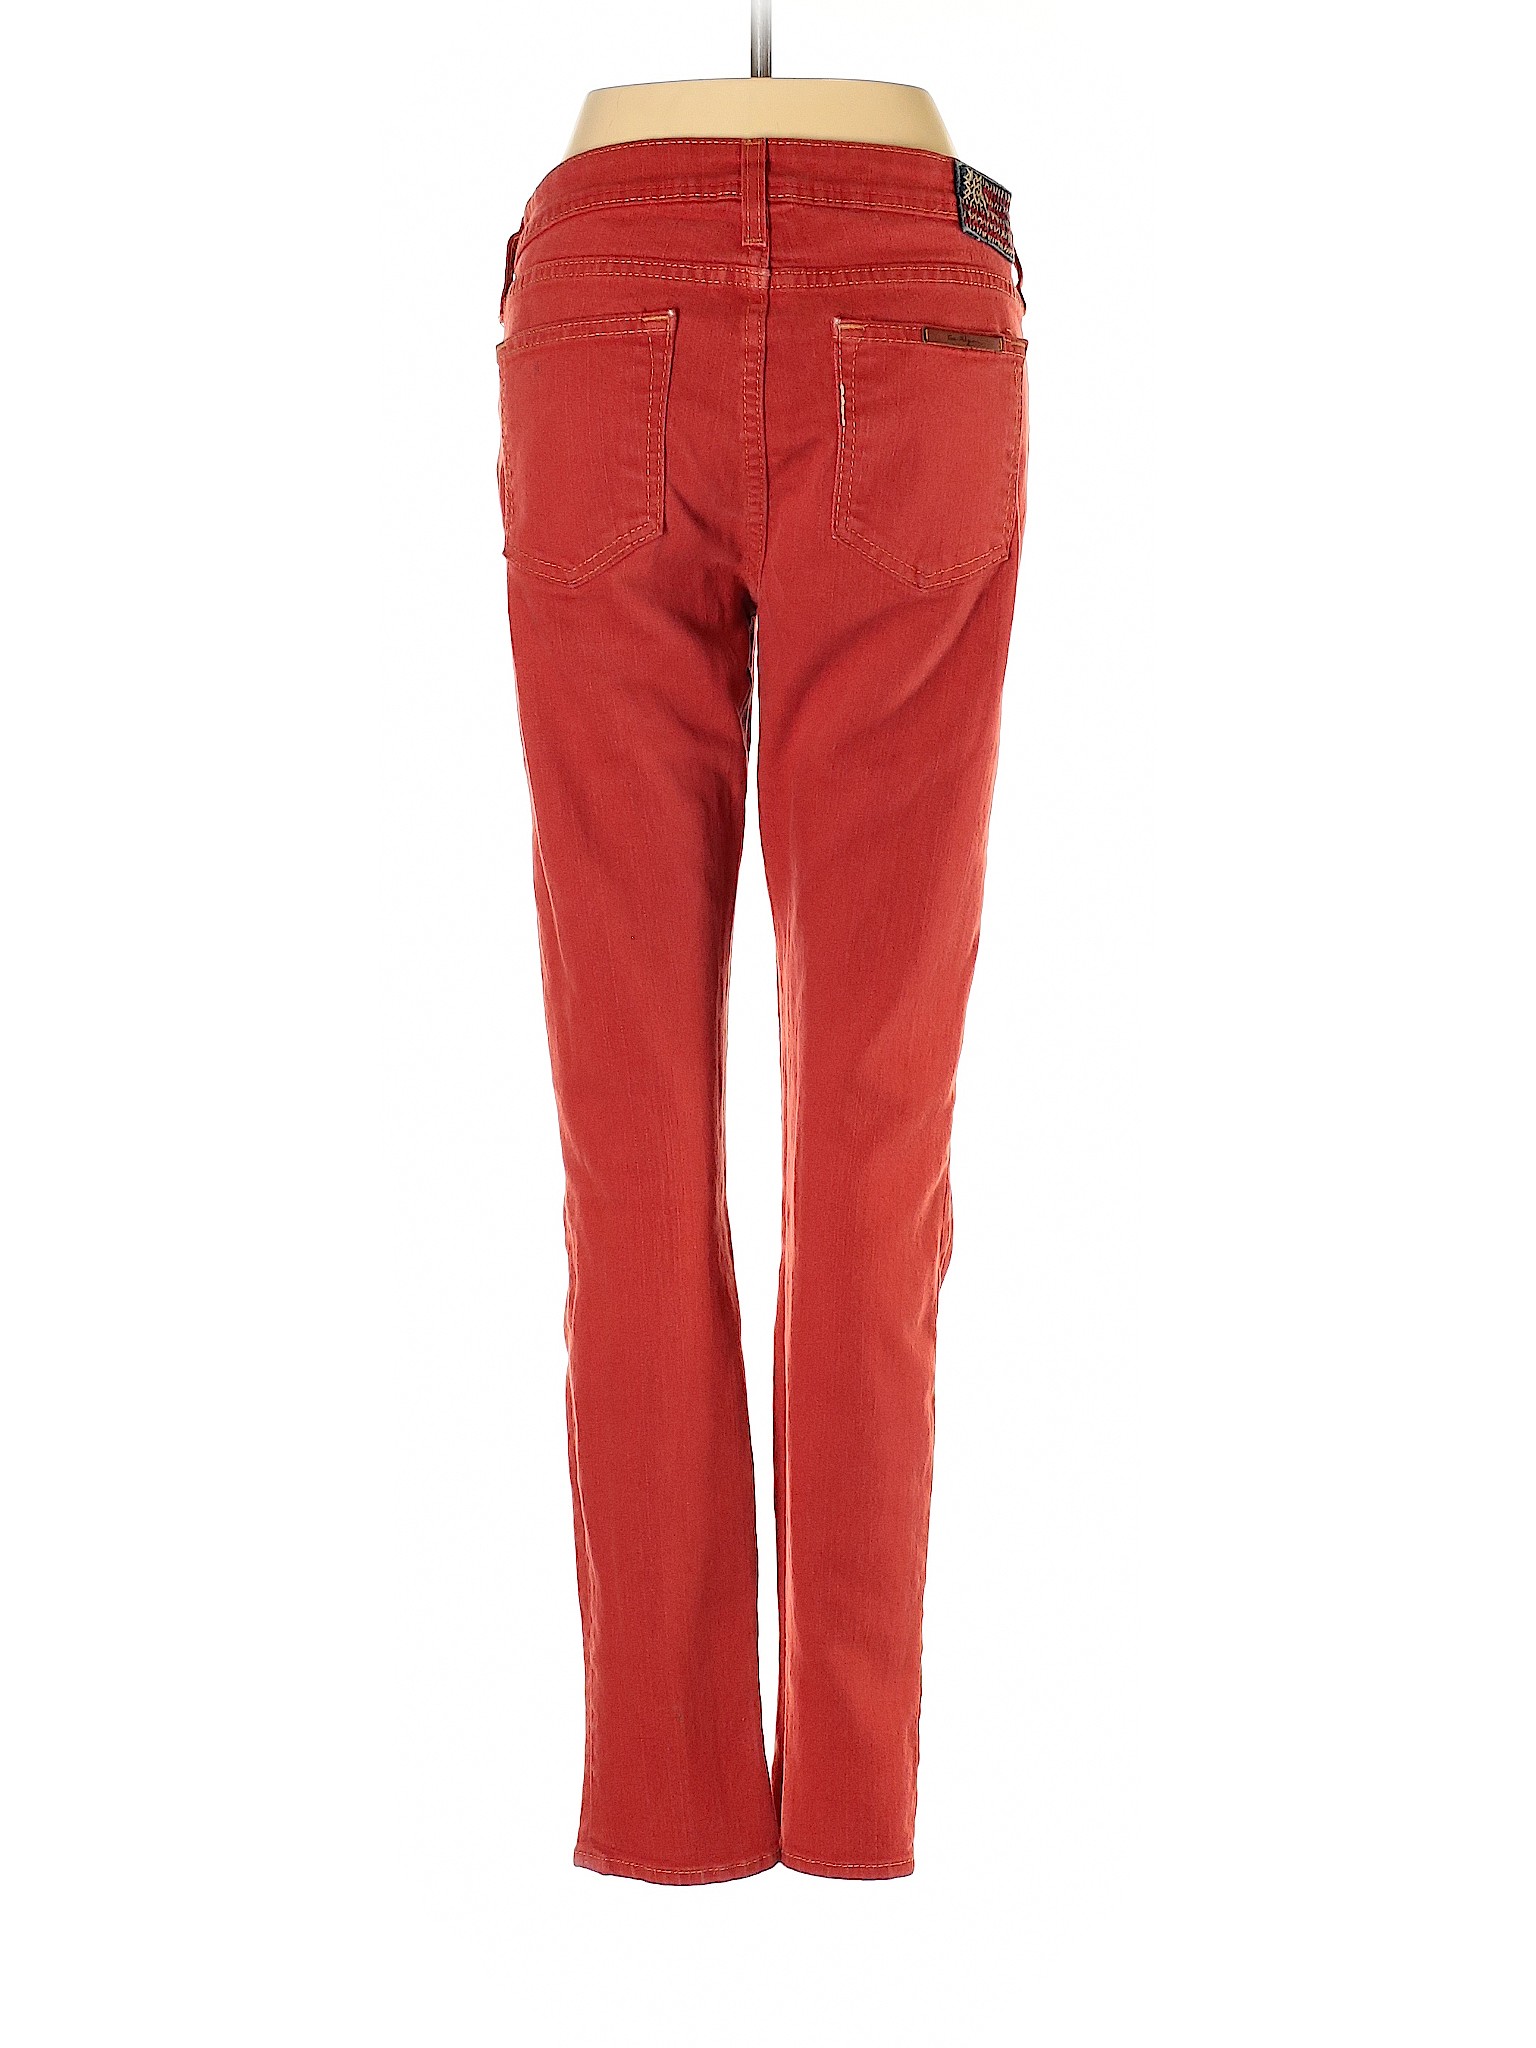 True Religion Women Red Jeans 29W | eBay